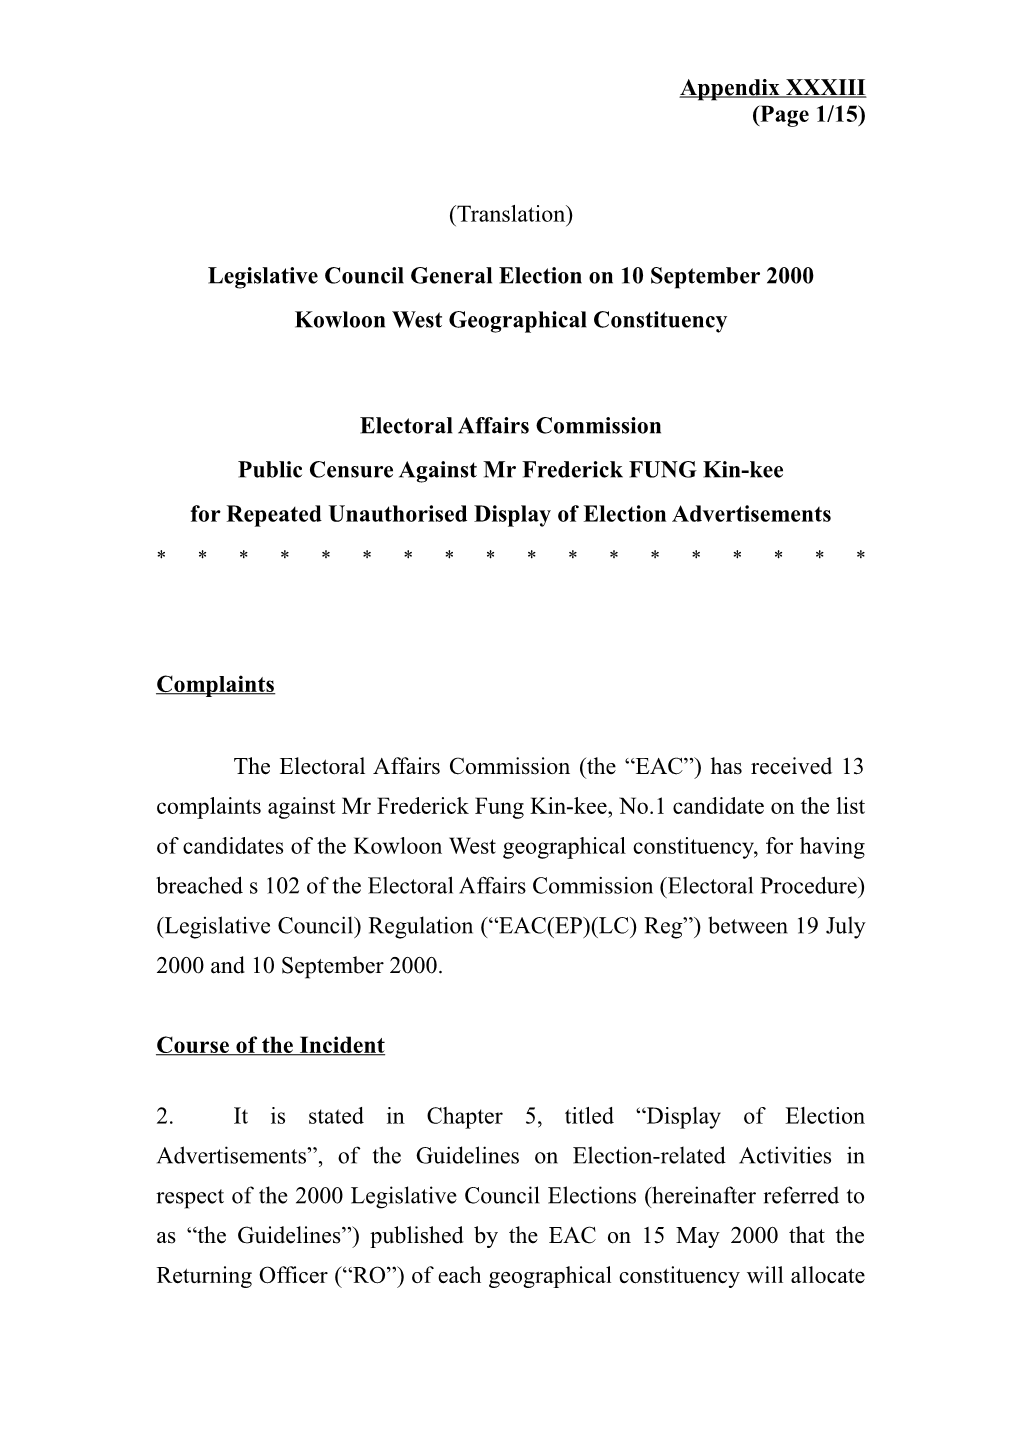 Legislative Council General Election on 10 September 2000